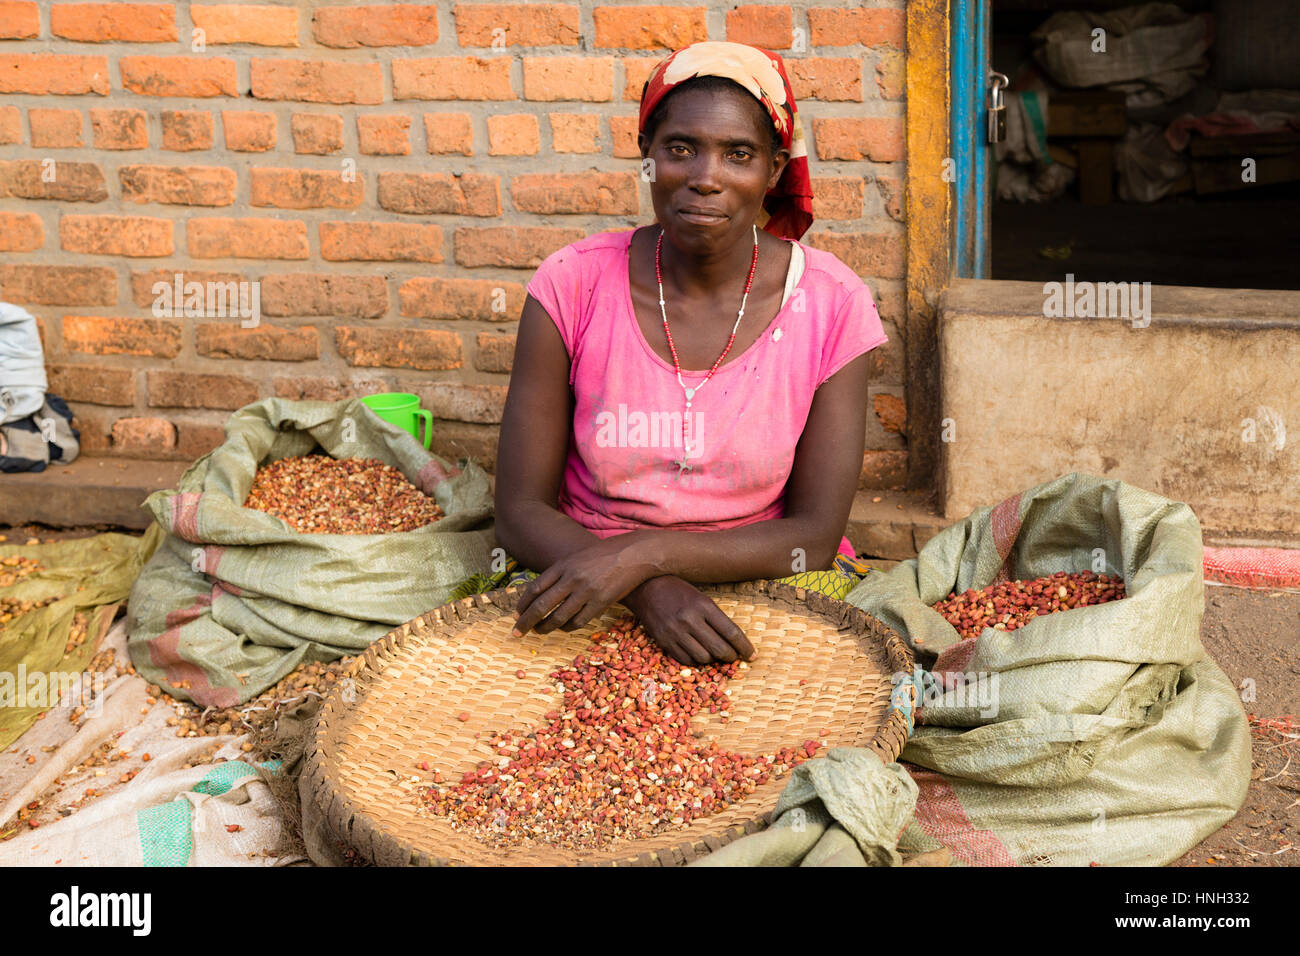 Woman sorting peanuts at the market, Musanze, Rwanda Stock Photo